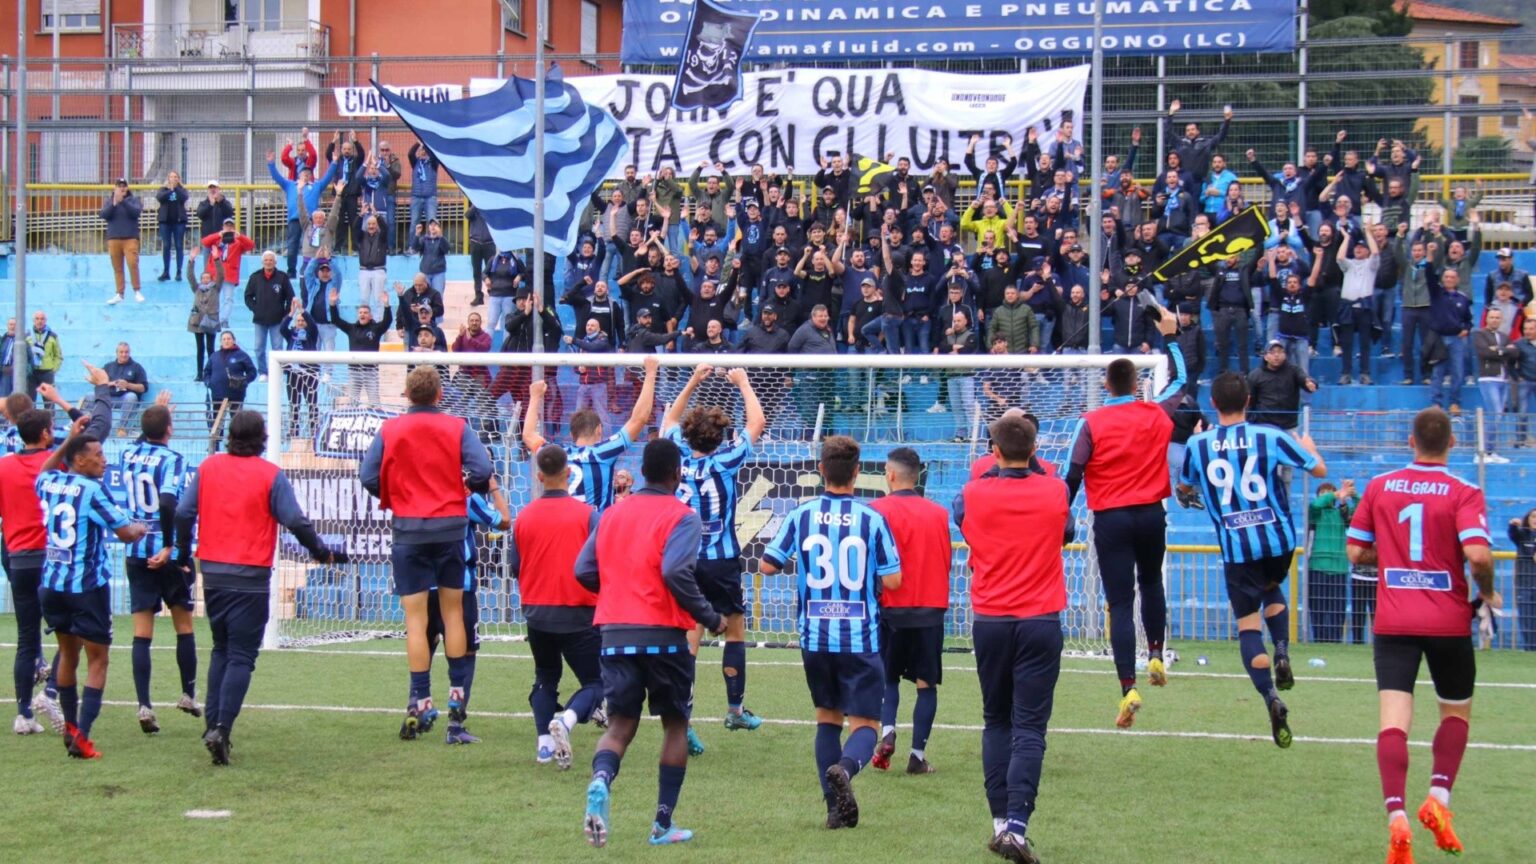 Serie B Lecco Foggia Perugia Reggina ricorsi